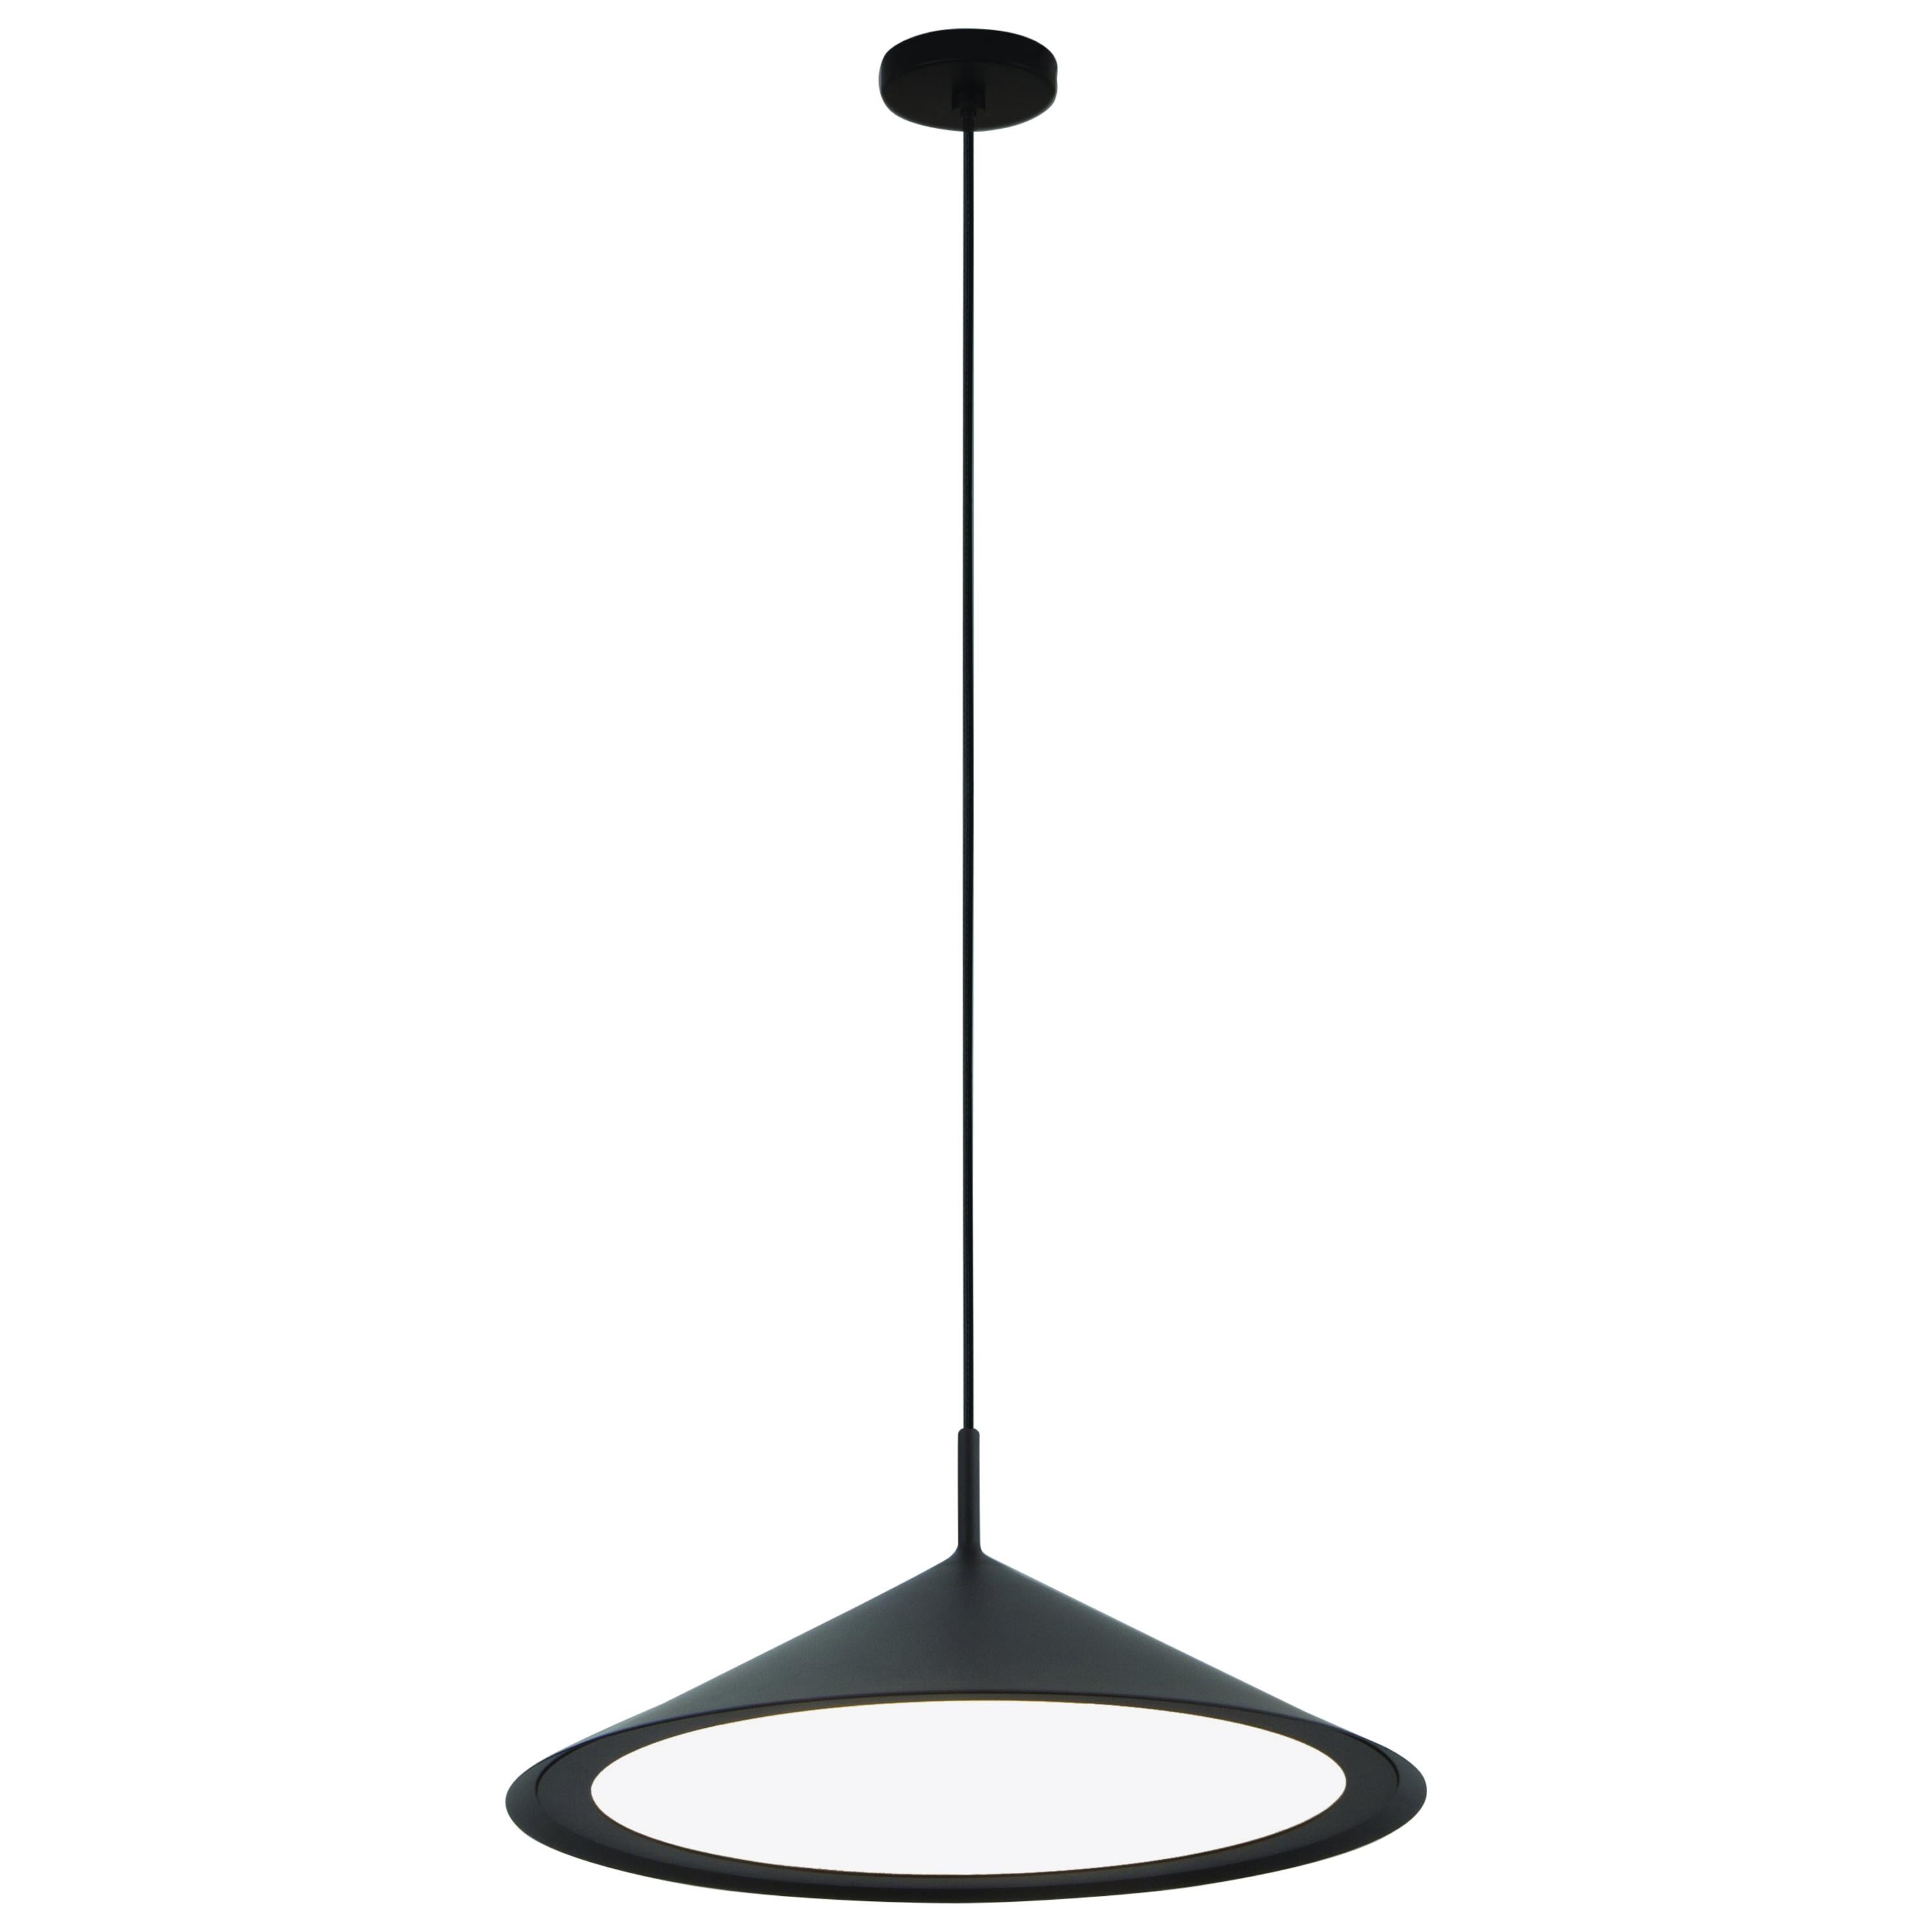 GORDON Ceiling Lamp Conical Diffuser in Matte Black by Corrado Dotti